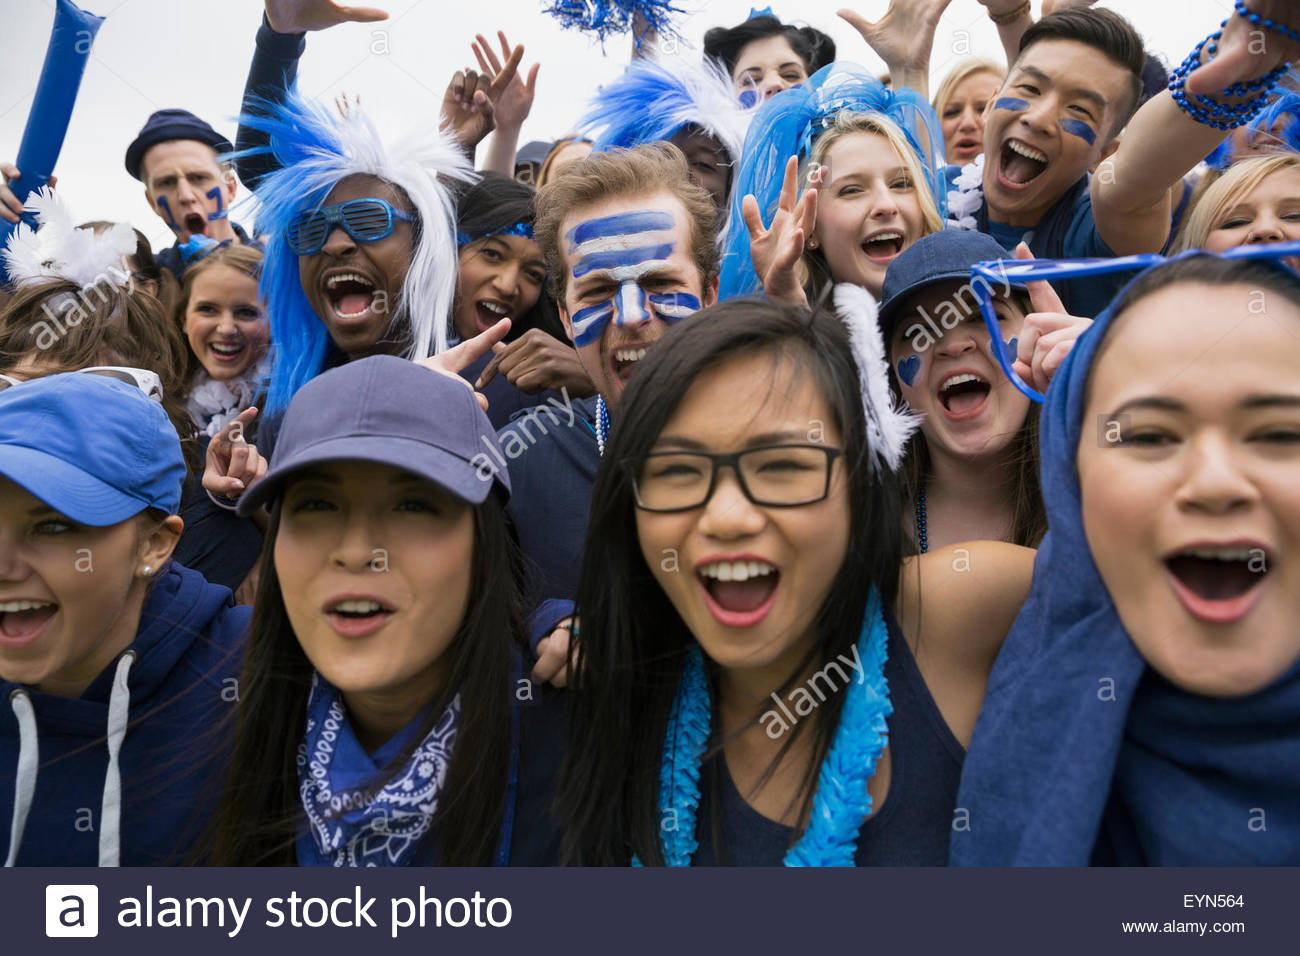 Portrait foule enthousiaste acclamant événement sportif en bleu Banque D'Images